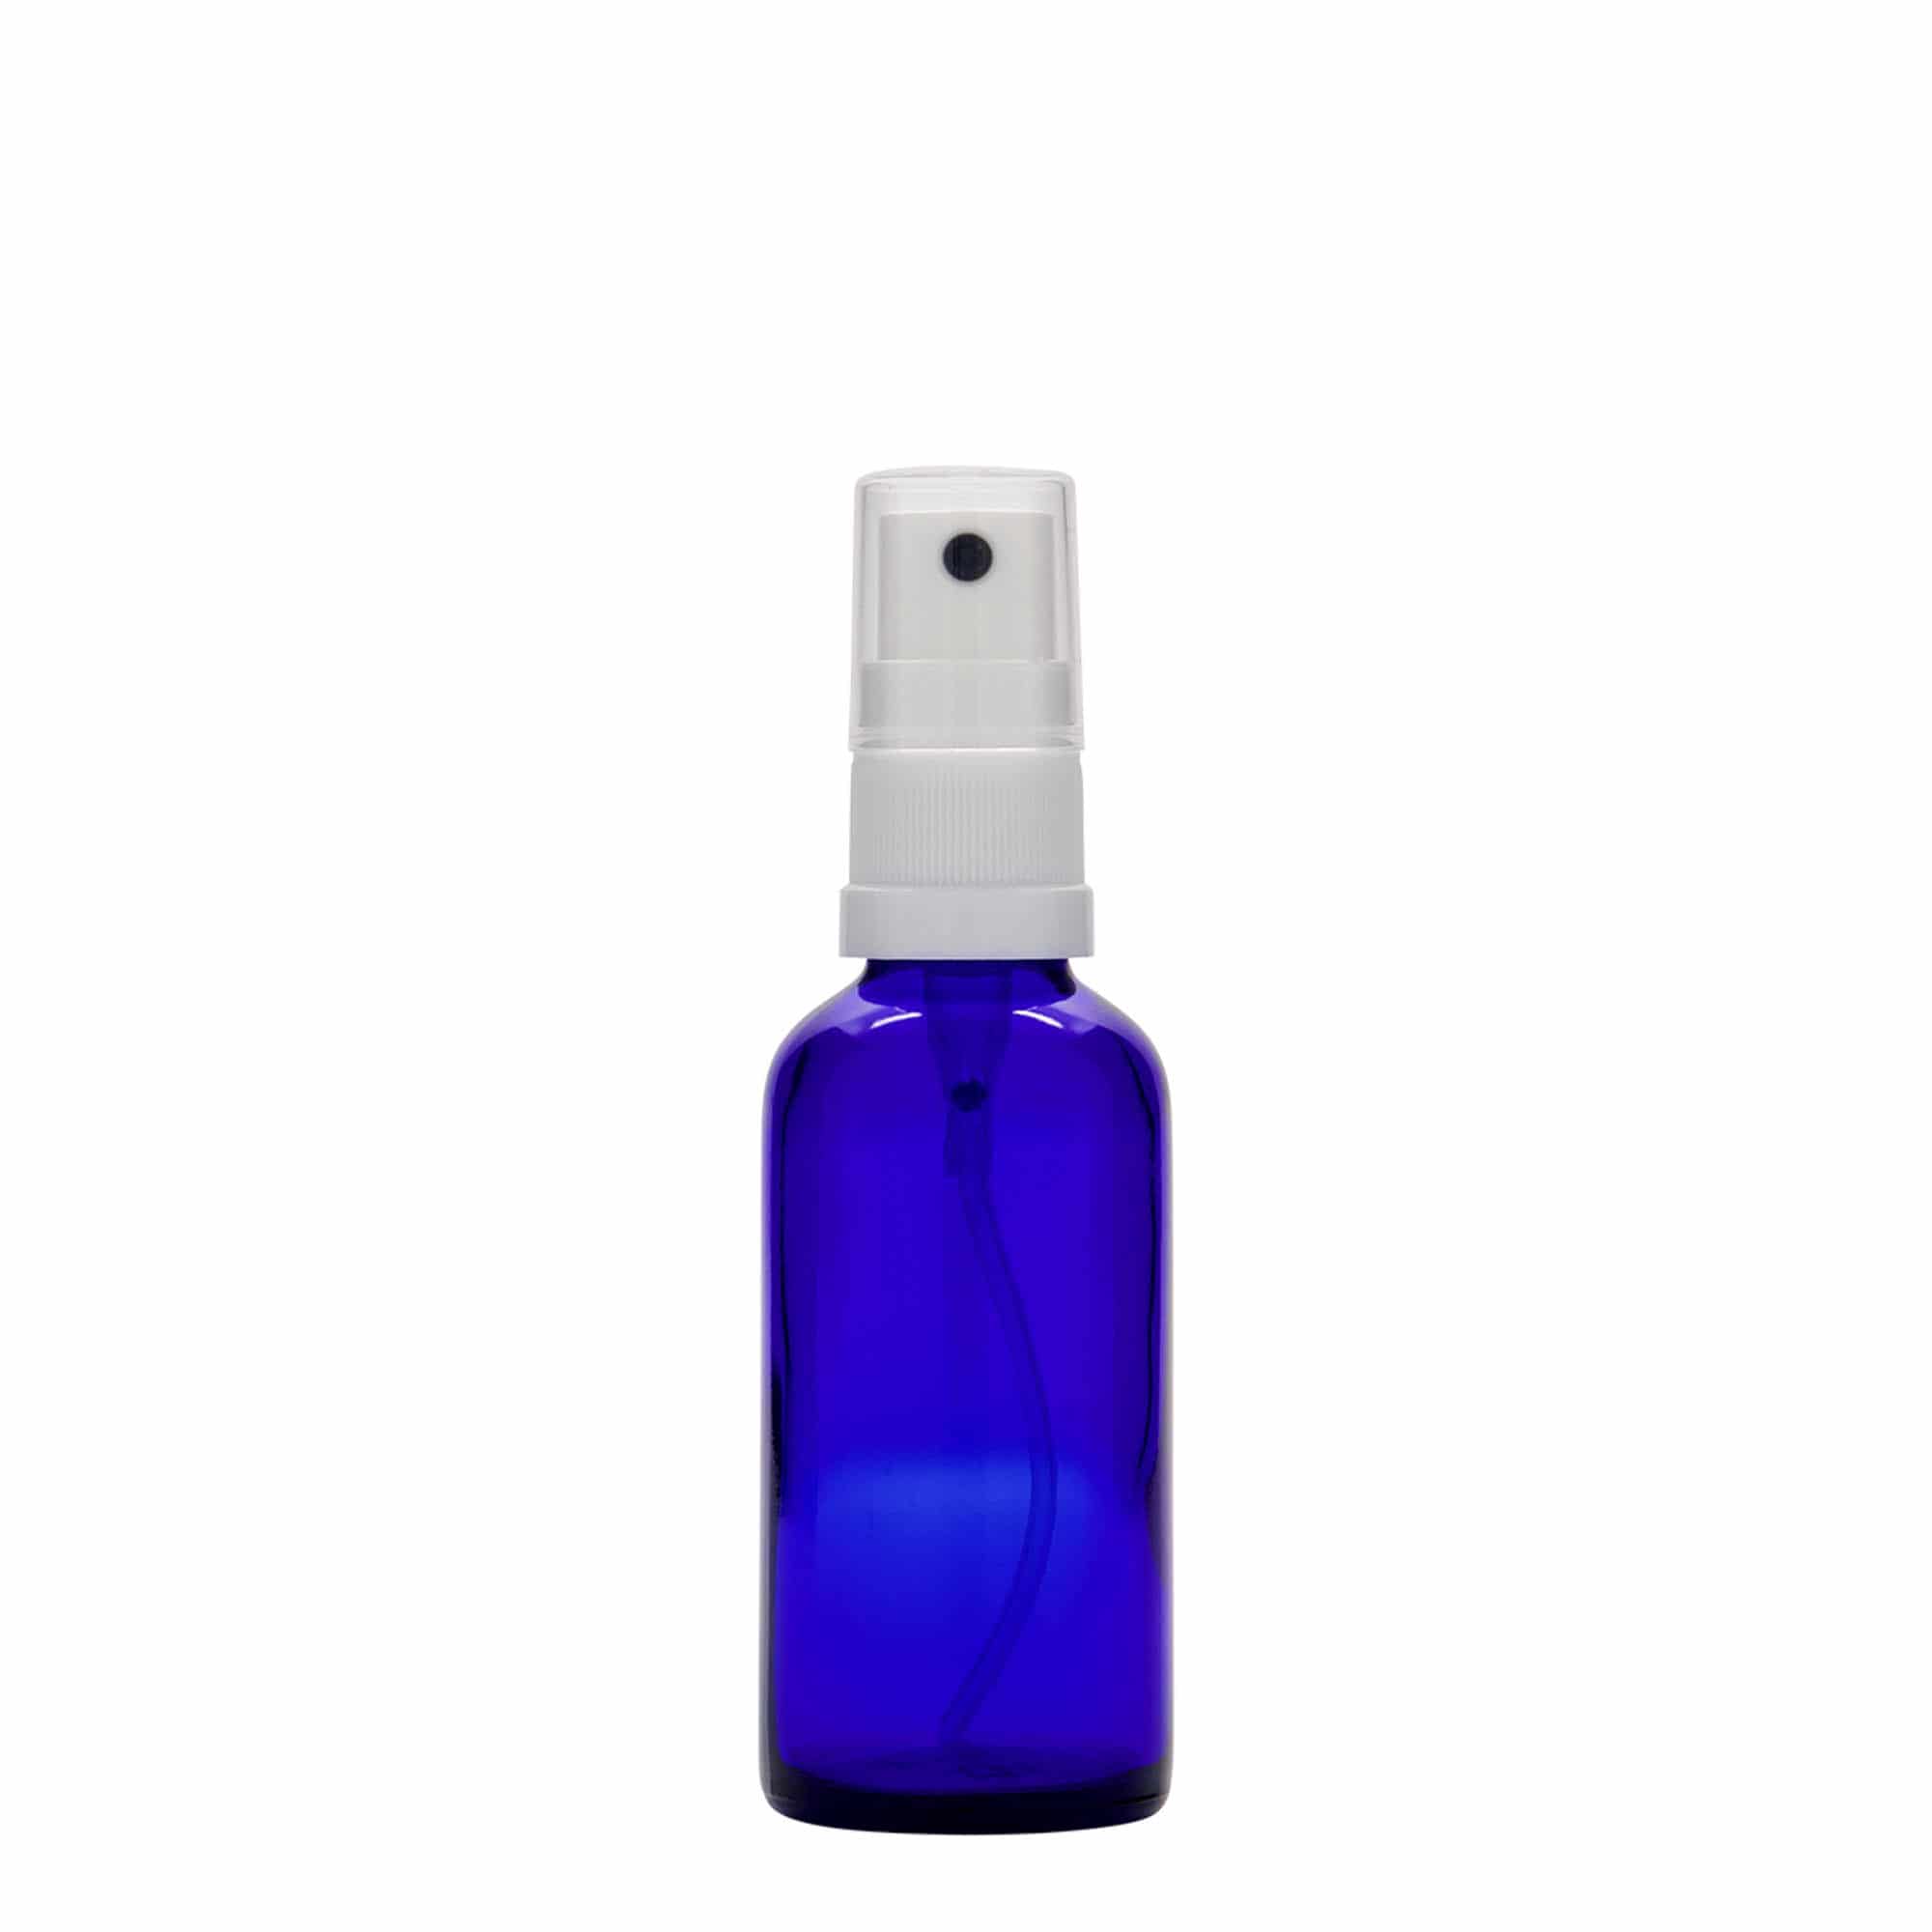 50 ml butelka farmaceutyczna z rozpylaczem, szkło, kolor błękit królewski, zamknięcie: DIN 18